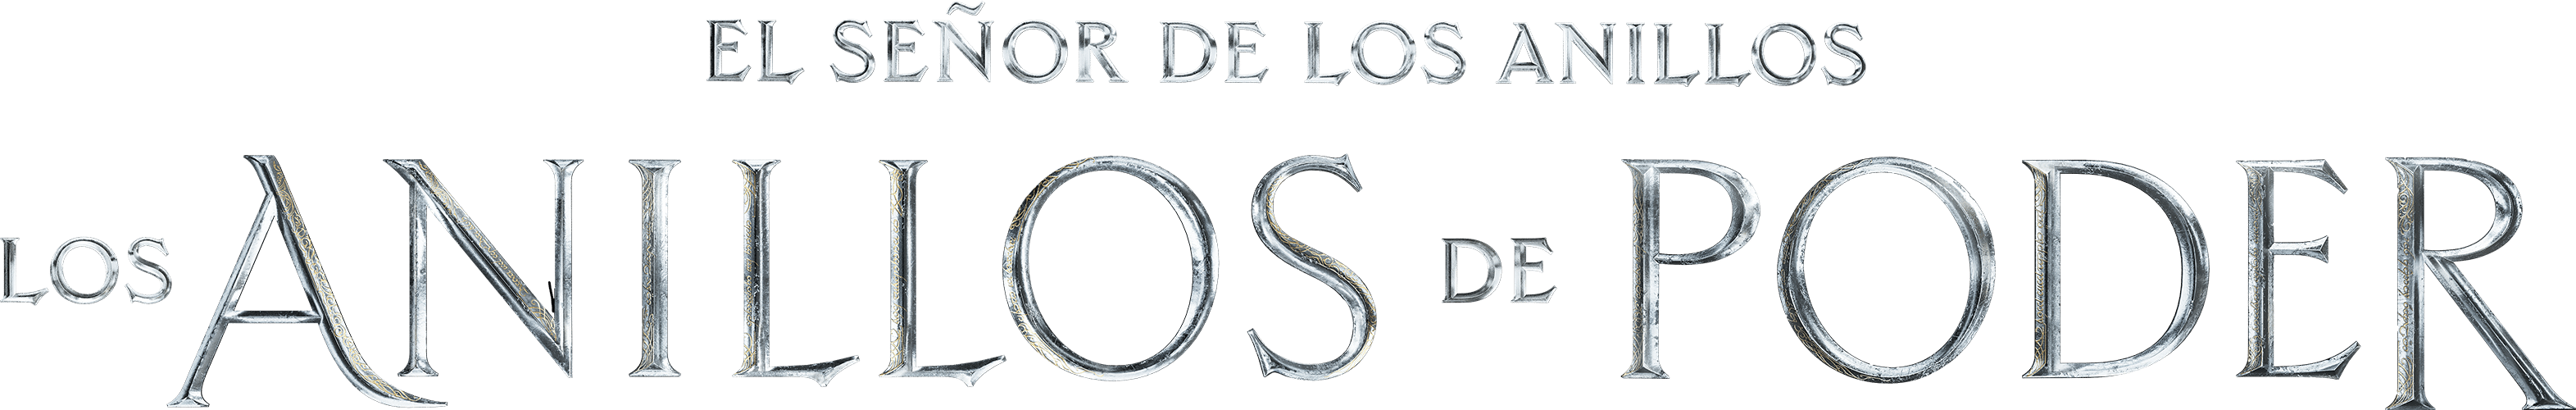 logo_los_anillos_del_poder_png.png